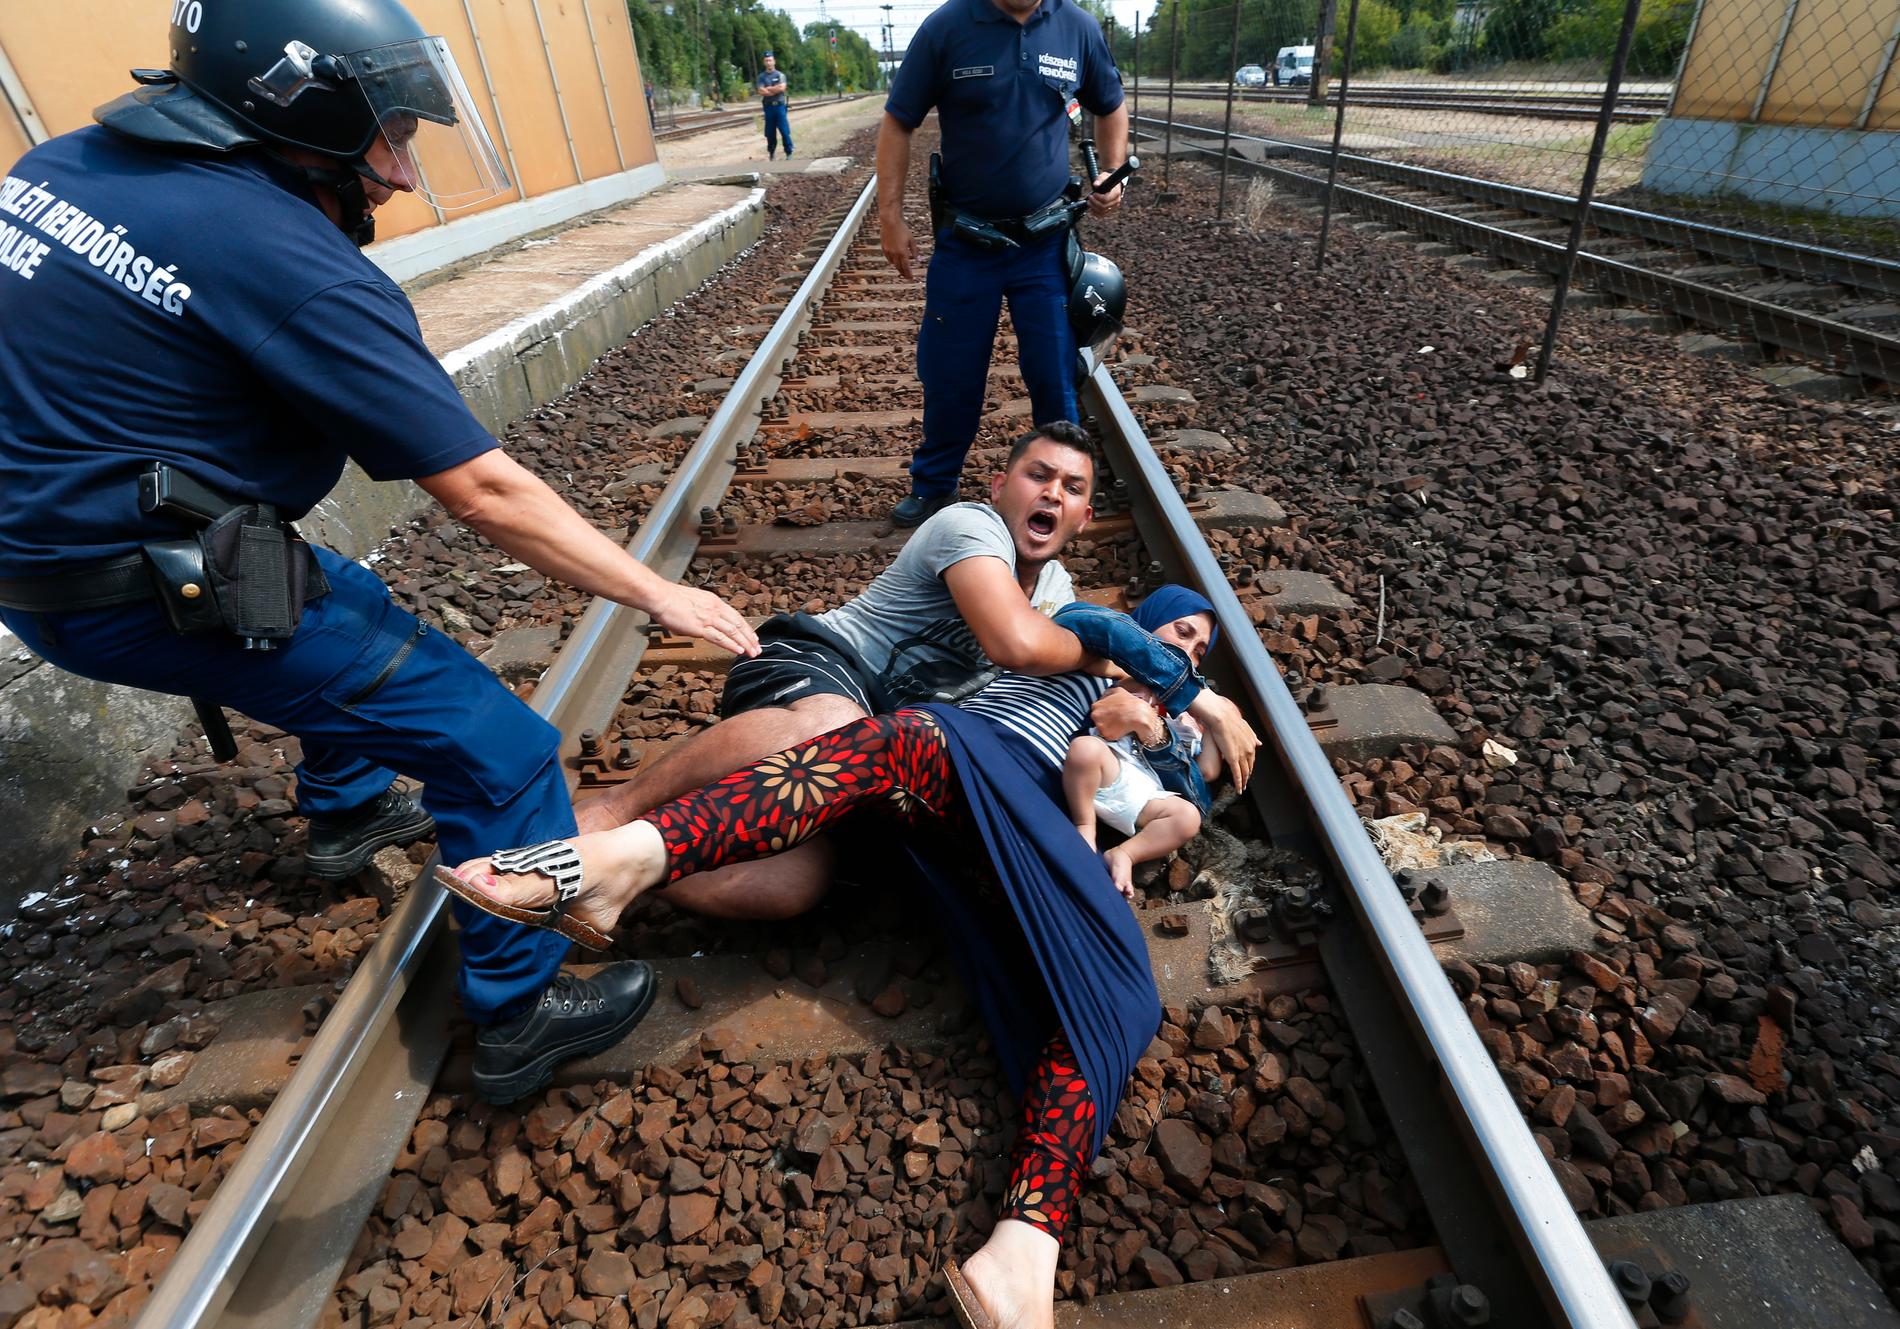 Kaotiska scener utspelade sig i staden Bicske sedan polisen stoppat och tömt ett tåg med migranter. I Bicske finns ett av Ungerns flyktingläger, med plats för cirka 350 människor.